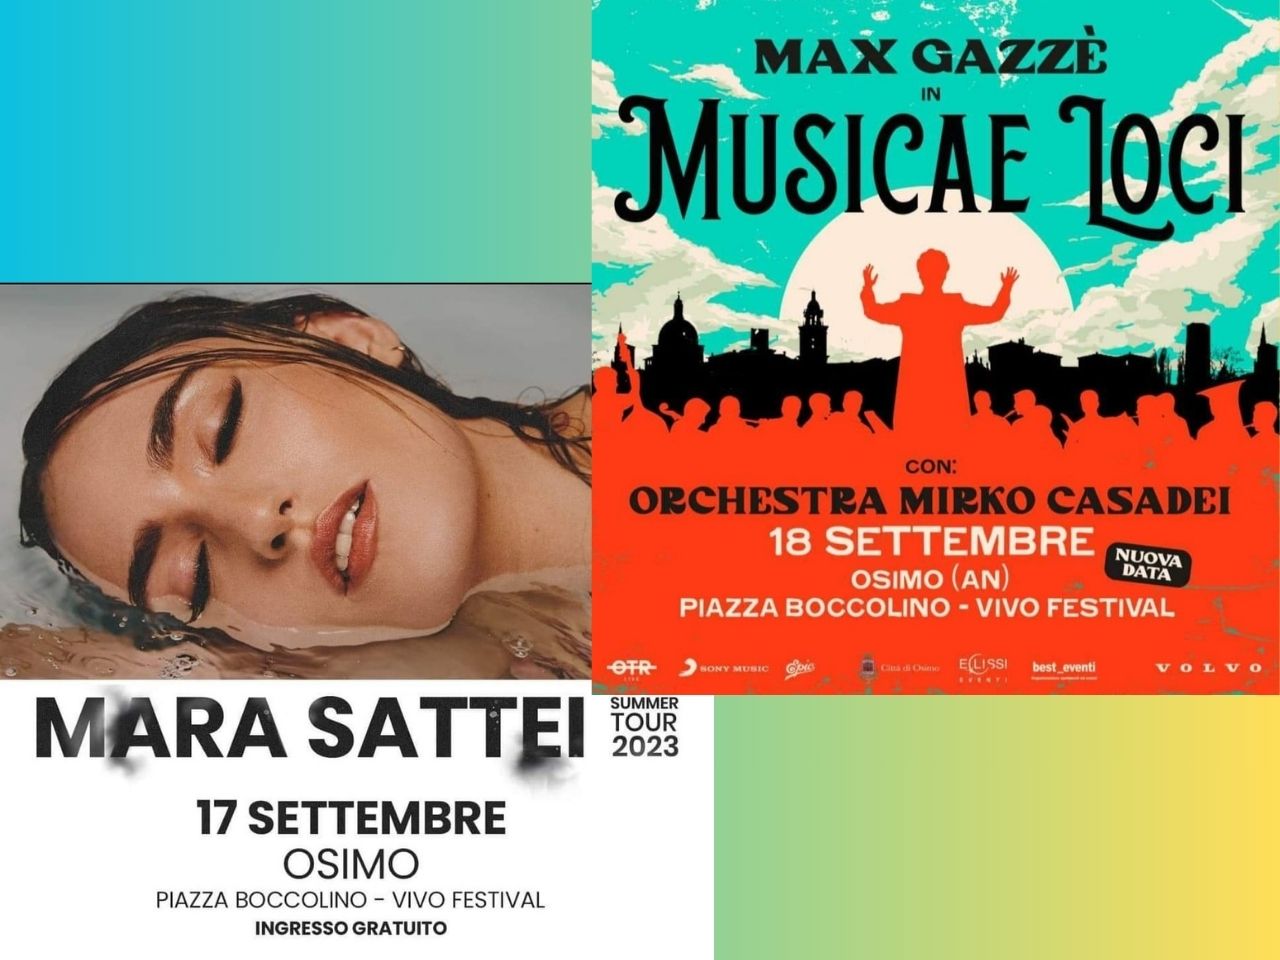 Mara Sattei e Max Gazzè alla Festa Patronale di Osimo: gli appuntamenti